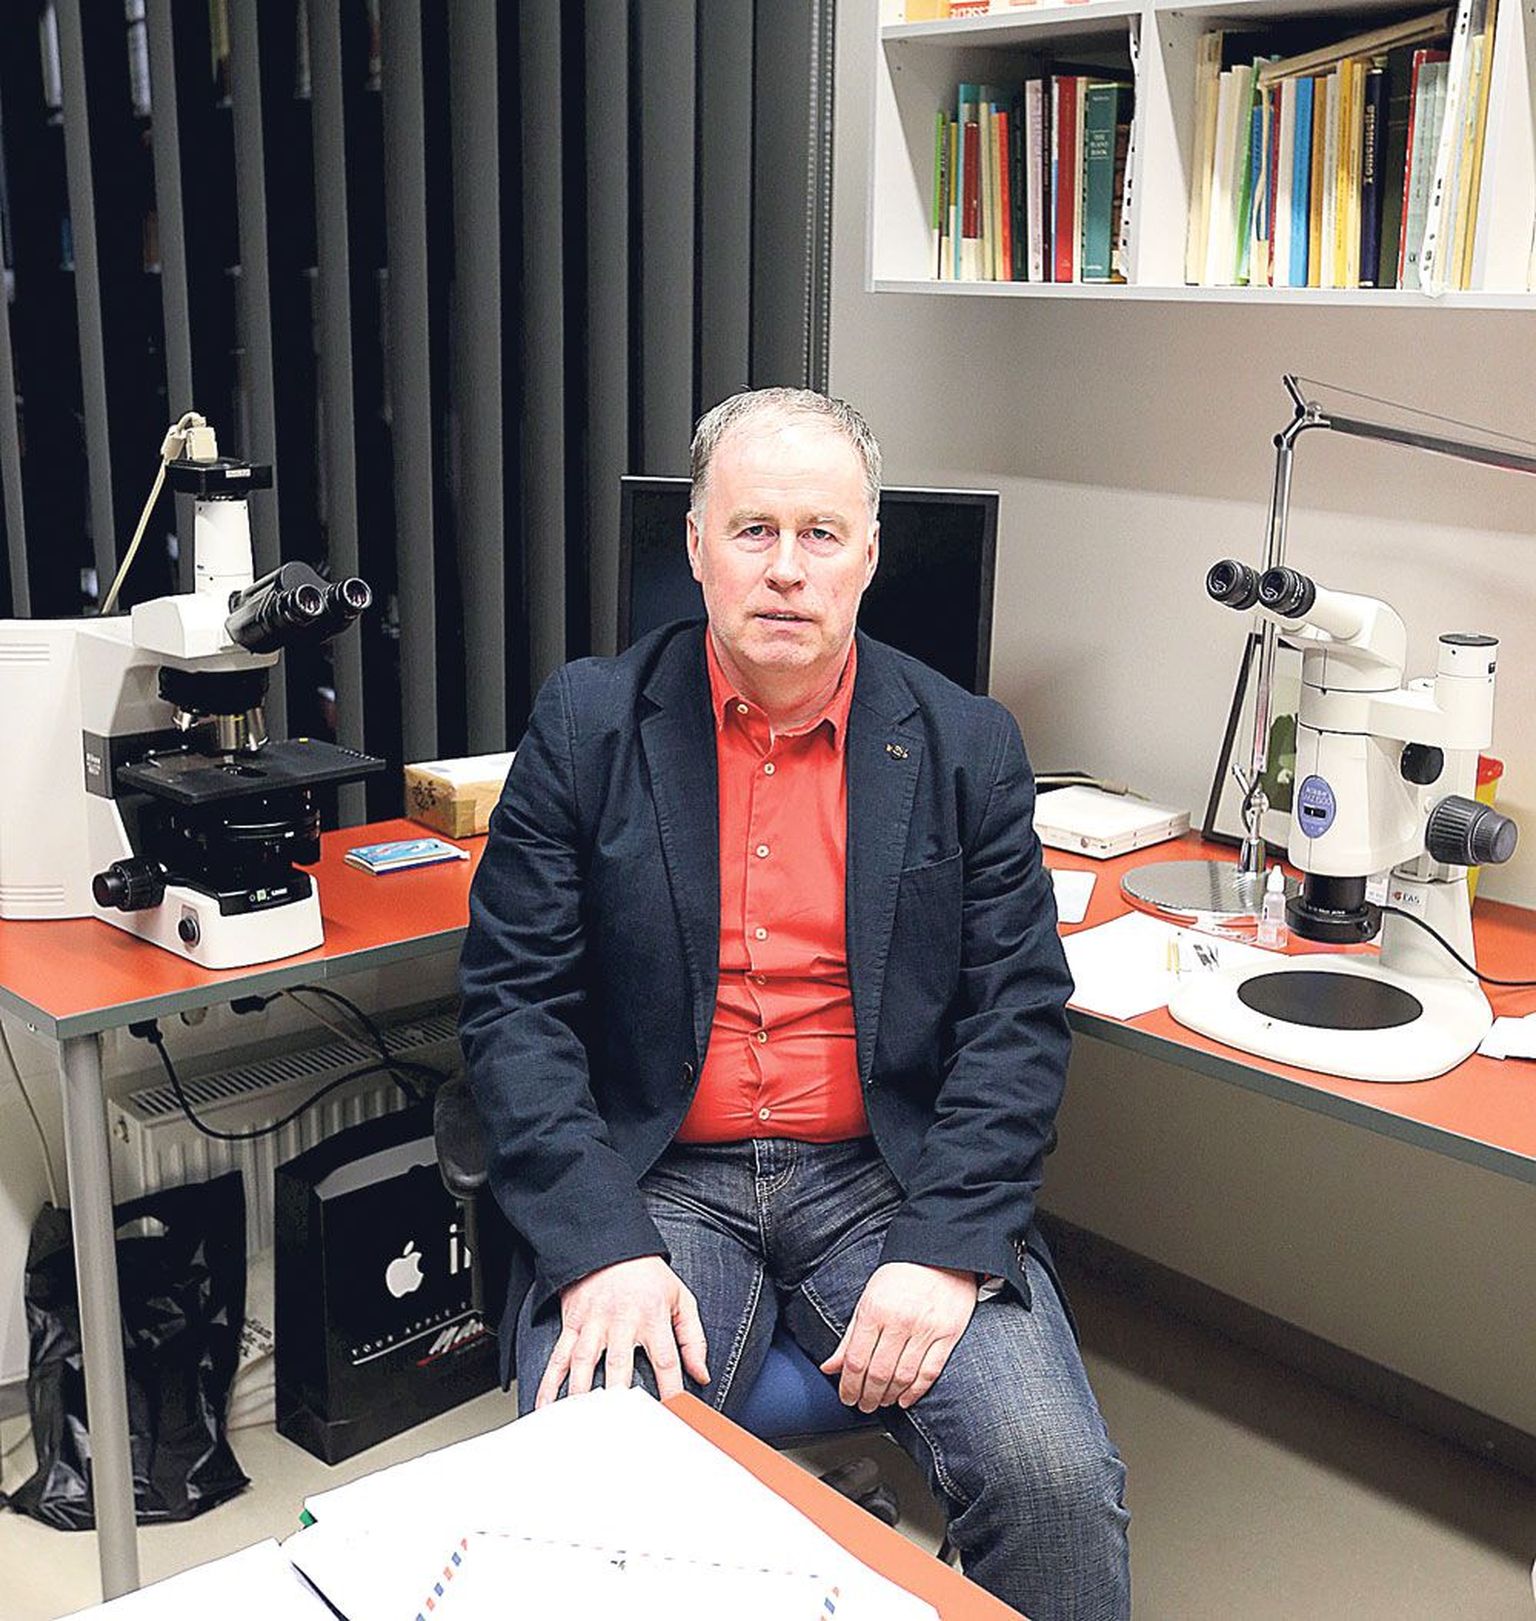 Uue asutuse, Tartu ülikooli loodusmuuseumi ja botaanikaaia direktor on Urmas Kõljalg, kes jääb uut asutust juhtima vähemalt loodusmuuseumi valmimiseni.